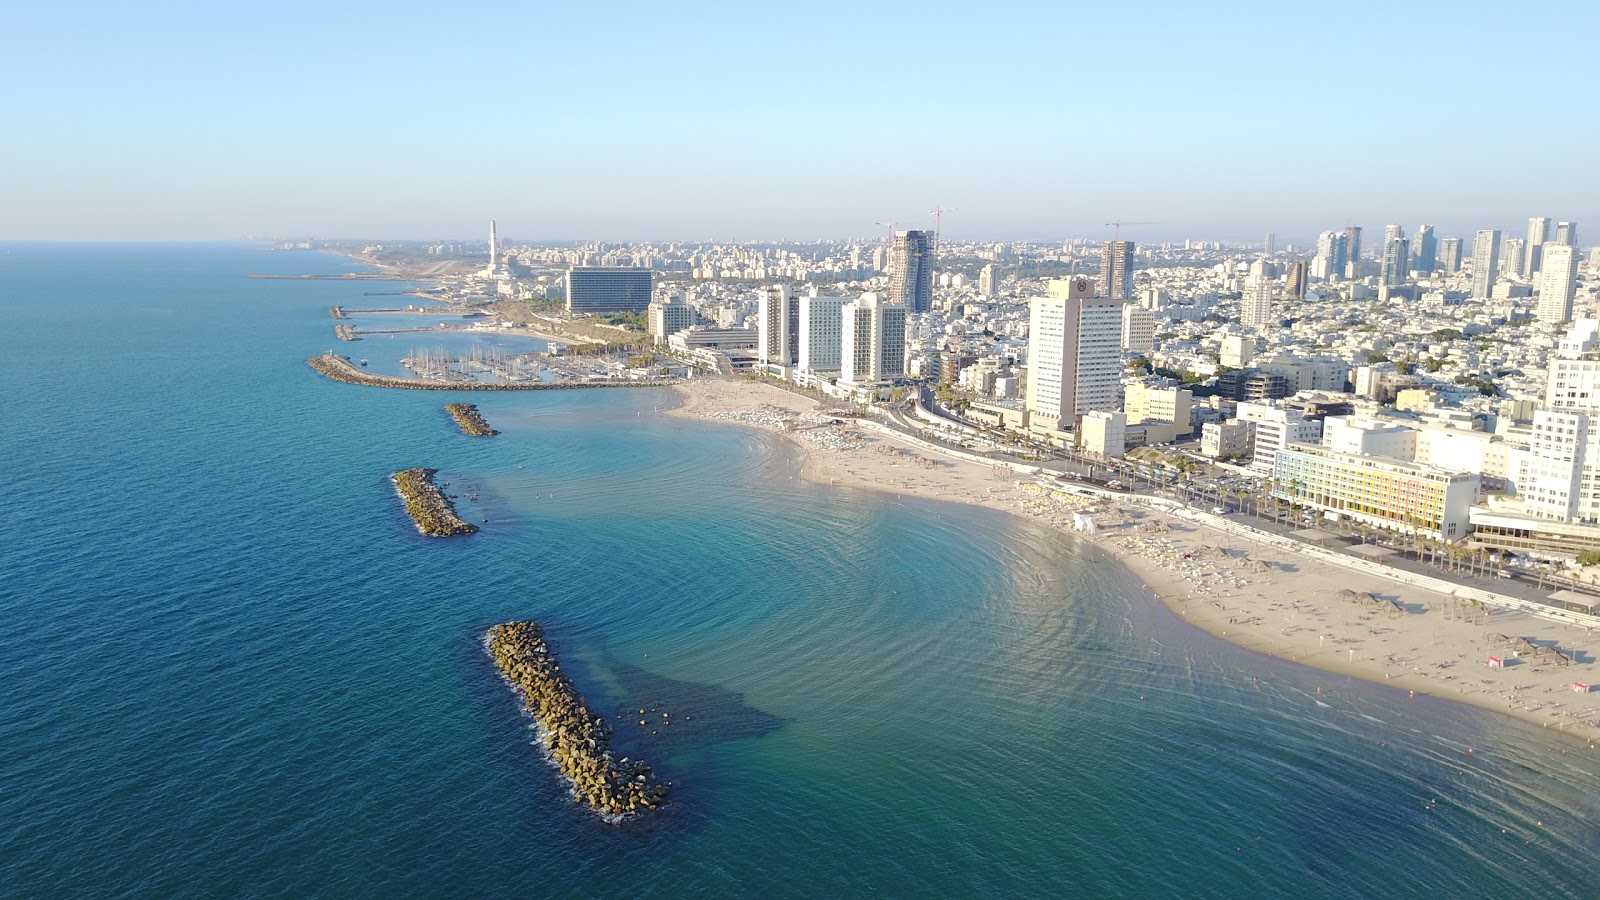 Tel Aviv beach'in fotoğrafı parlak ince kum yüzey ile